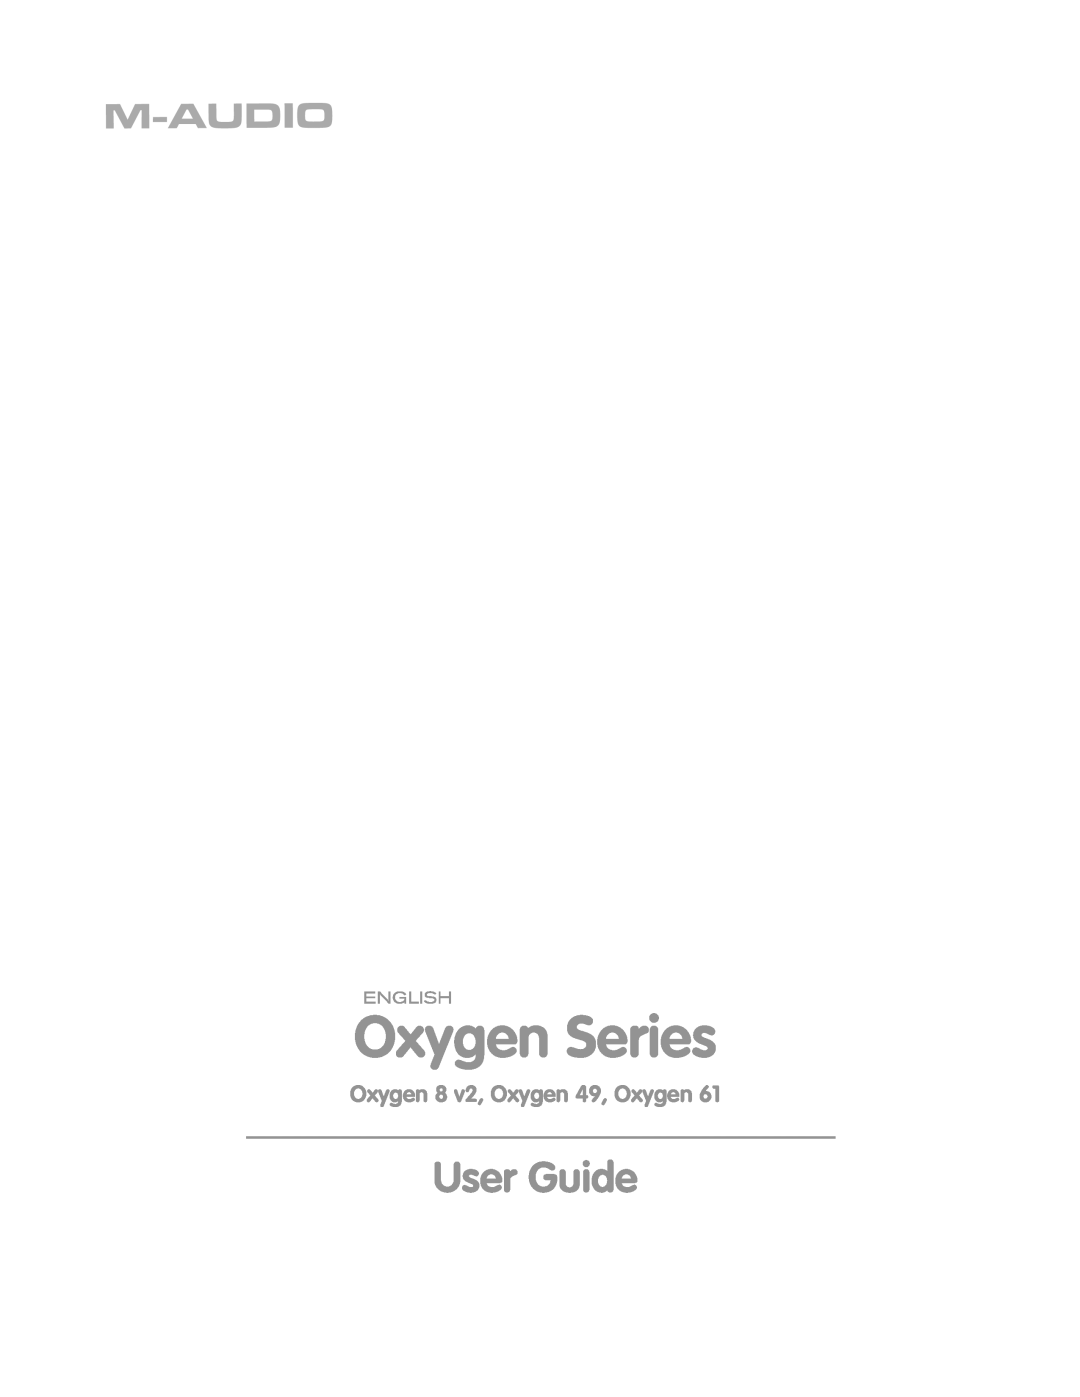 M-Audio OXYGEN 8 V2 manual Oxygen Series, User Guide, Oxygen 8 v2, Oxygen 49, Oxygen 